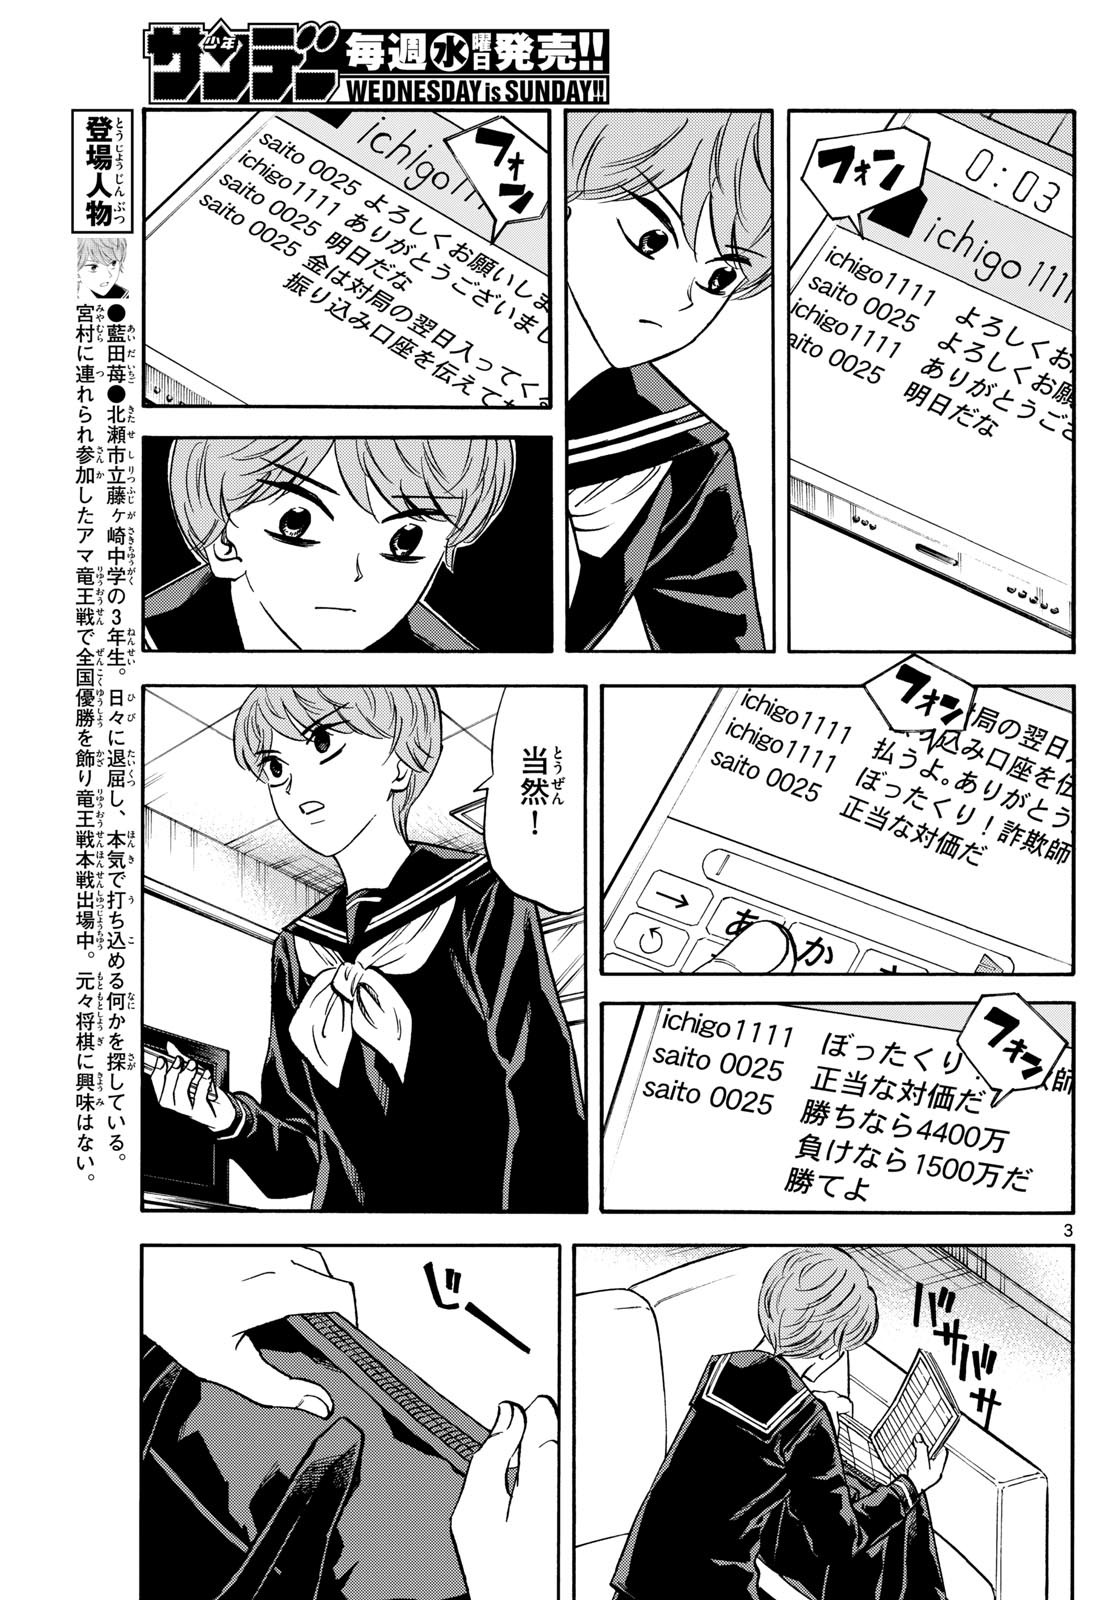 Ryu-to-Ichigo - Chapter 174 - Page 3